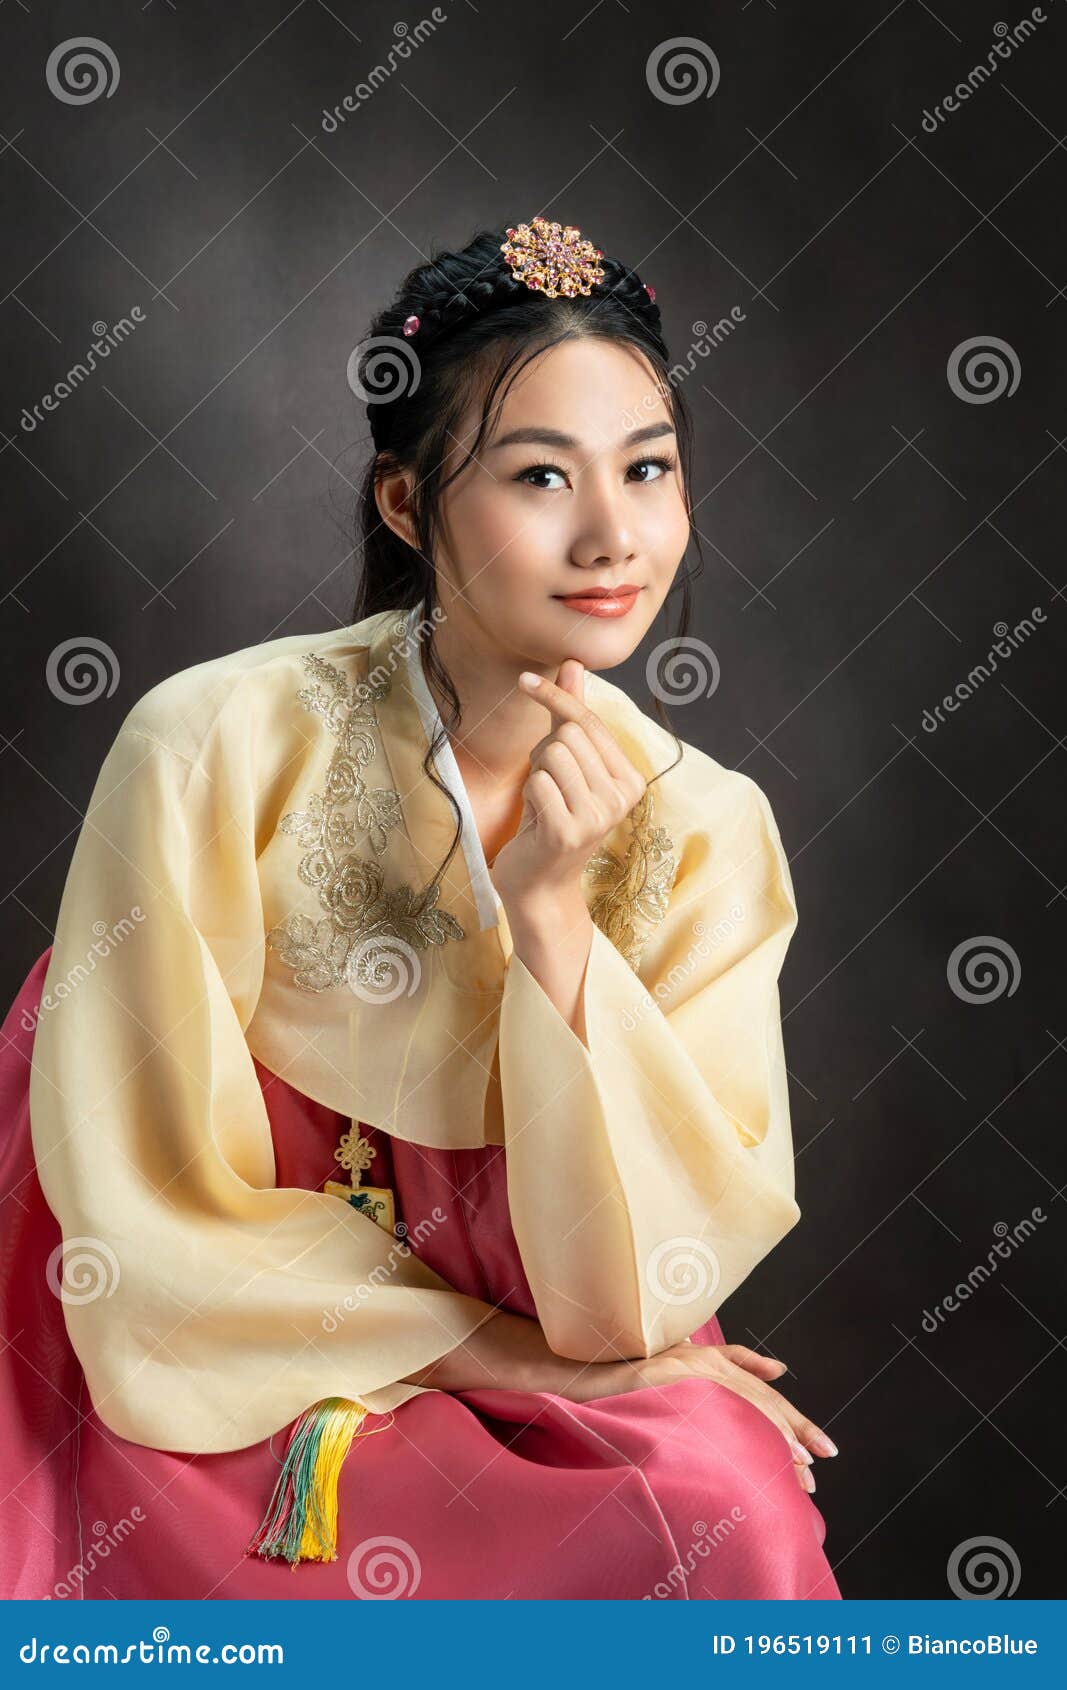 Hanbok, Coreana Vestida Con Traje Tradicional Coreano Imagen de archivo - Imagen de actitud, negro: